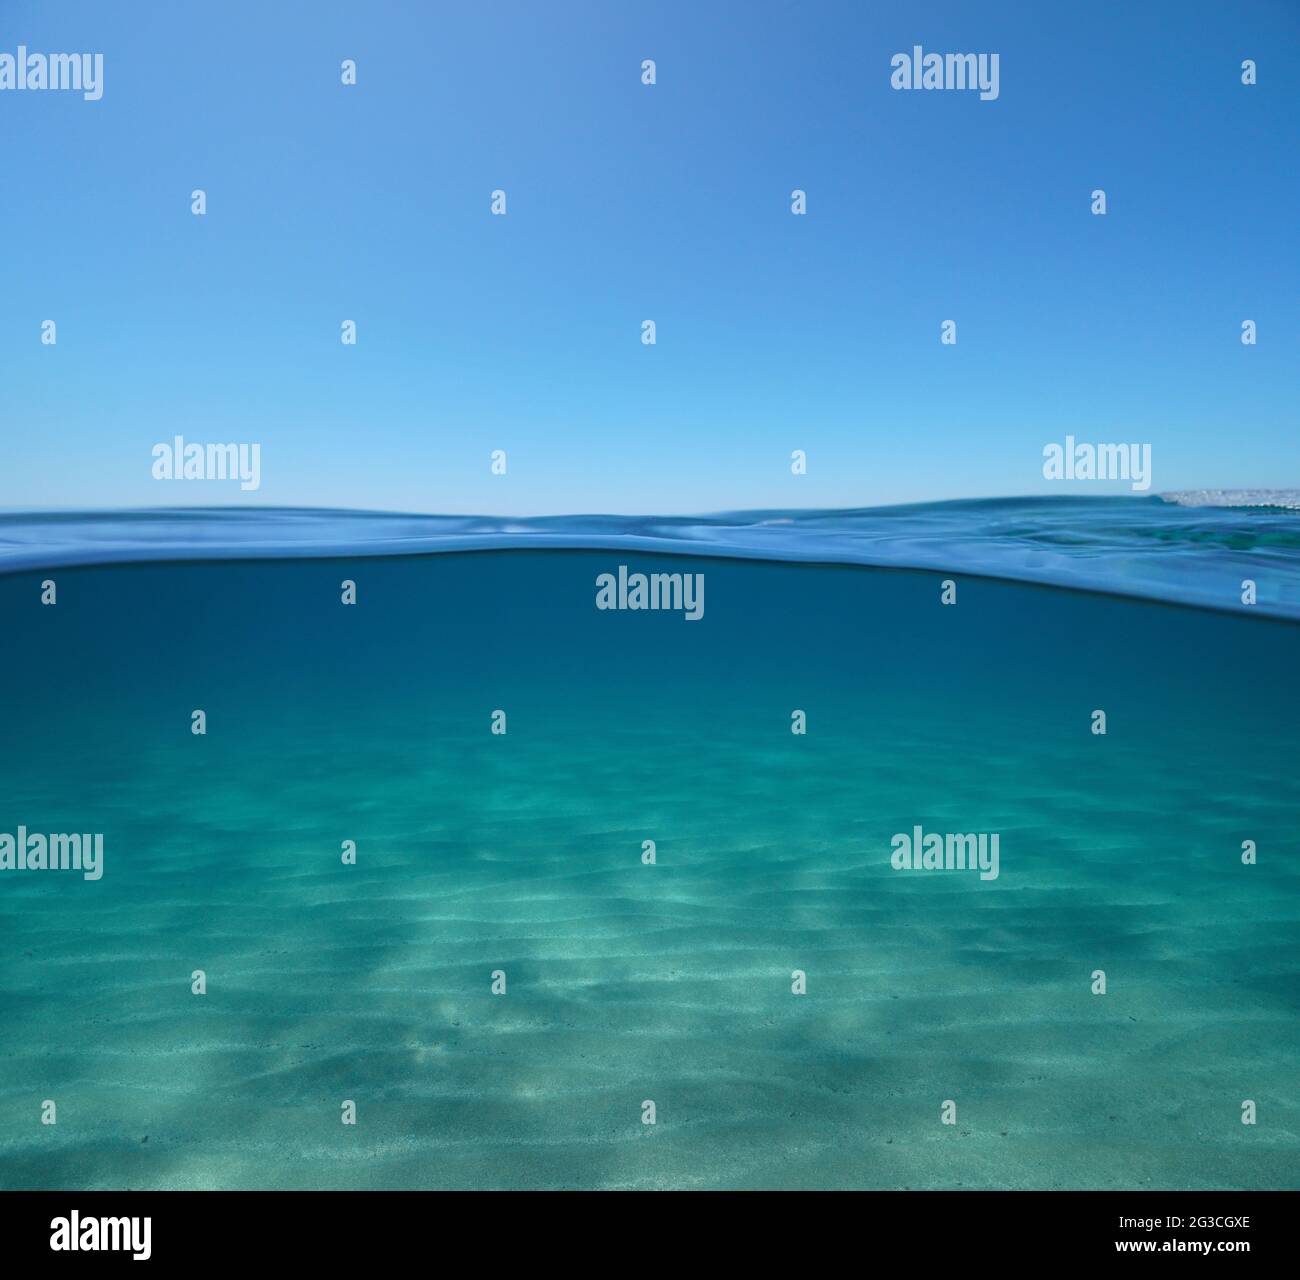 Ciel bleu avec sable mer sous-marine, vue partagée sur et sous la surface de l'eau, mer Méditerranée Banque D'Images